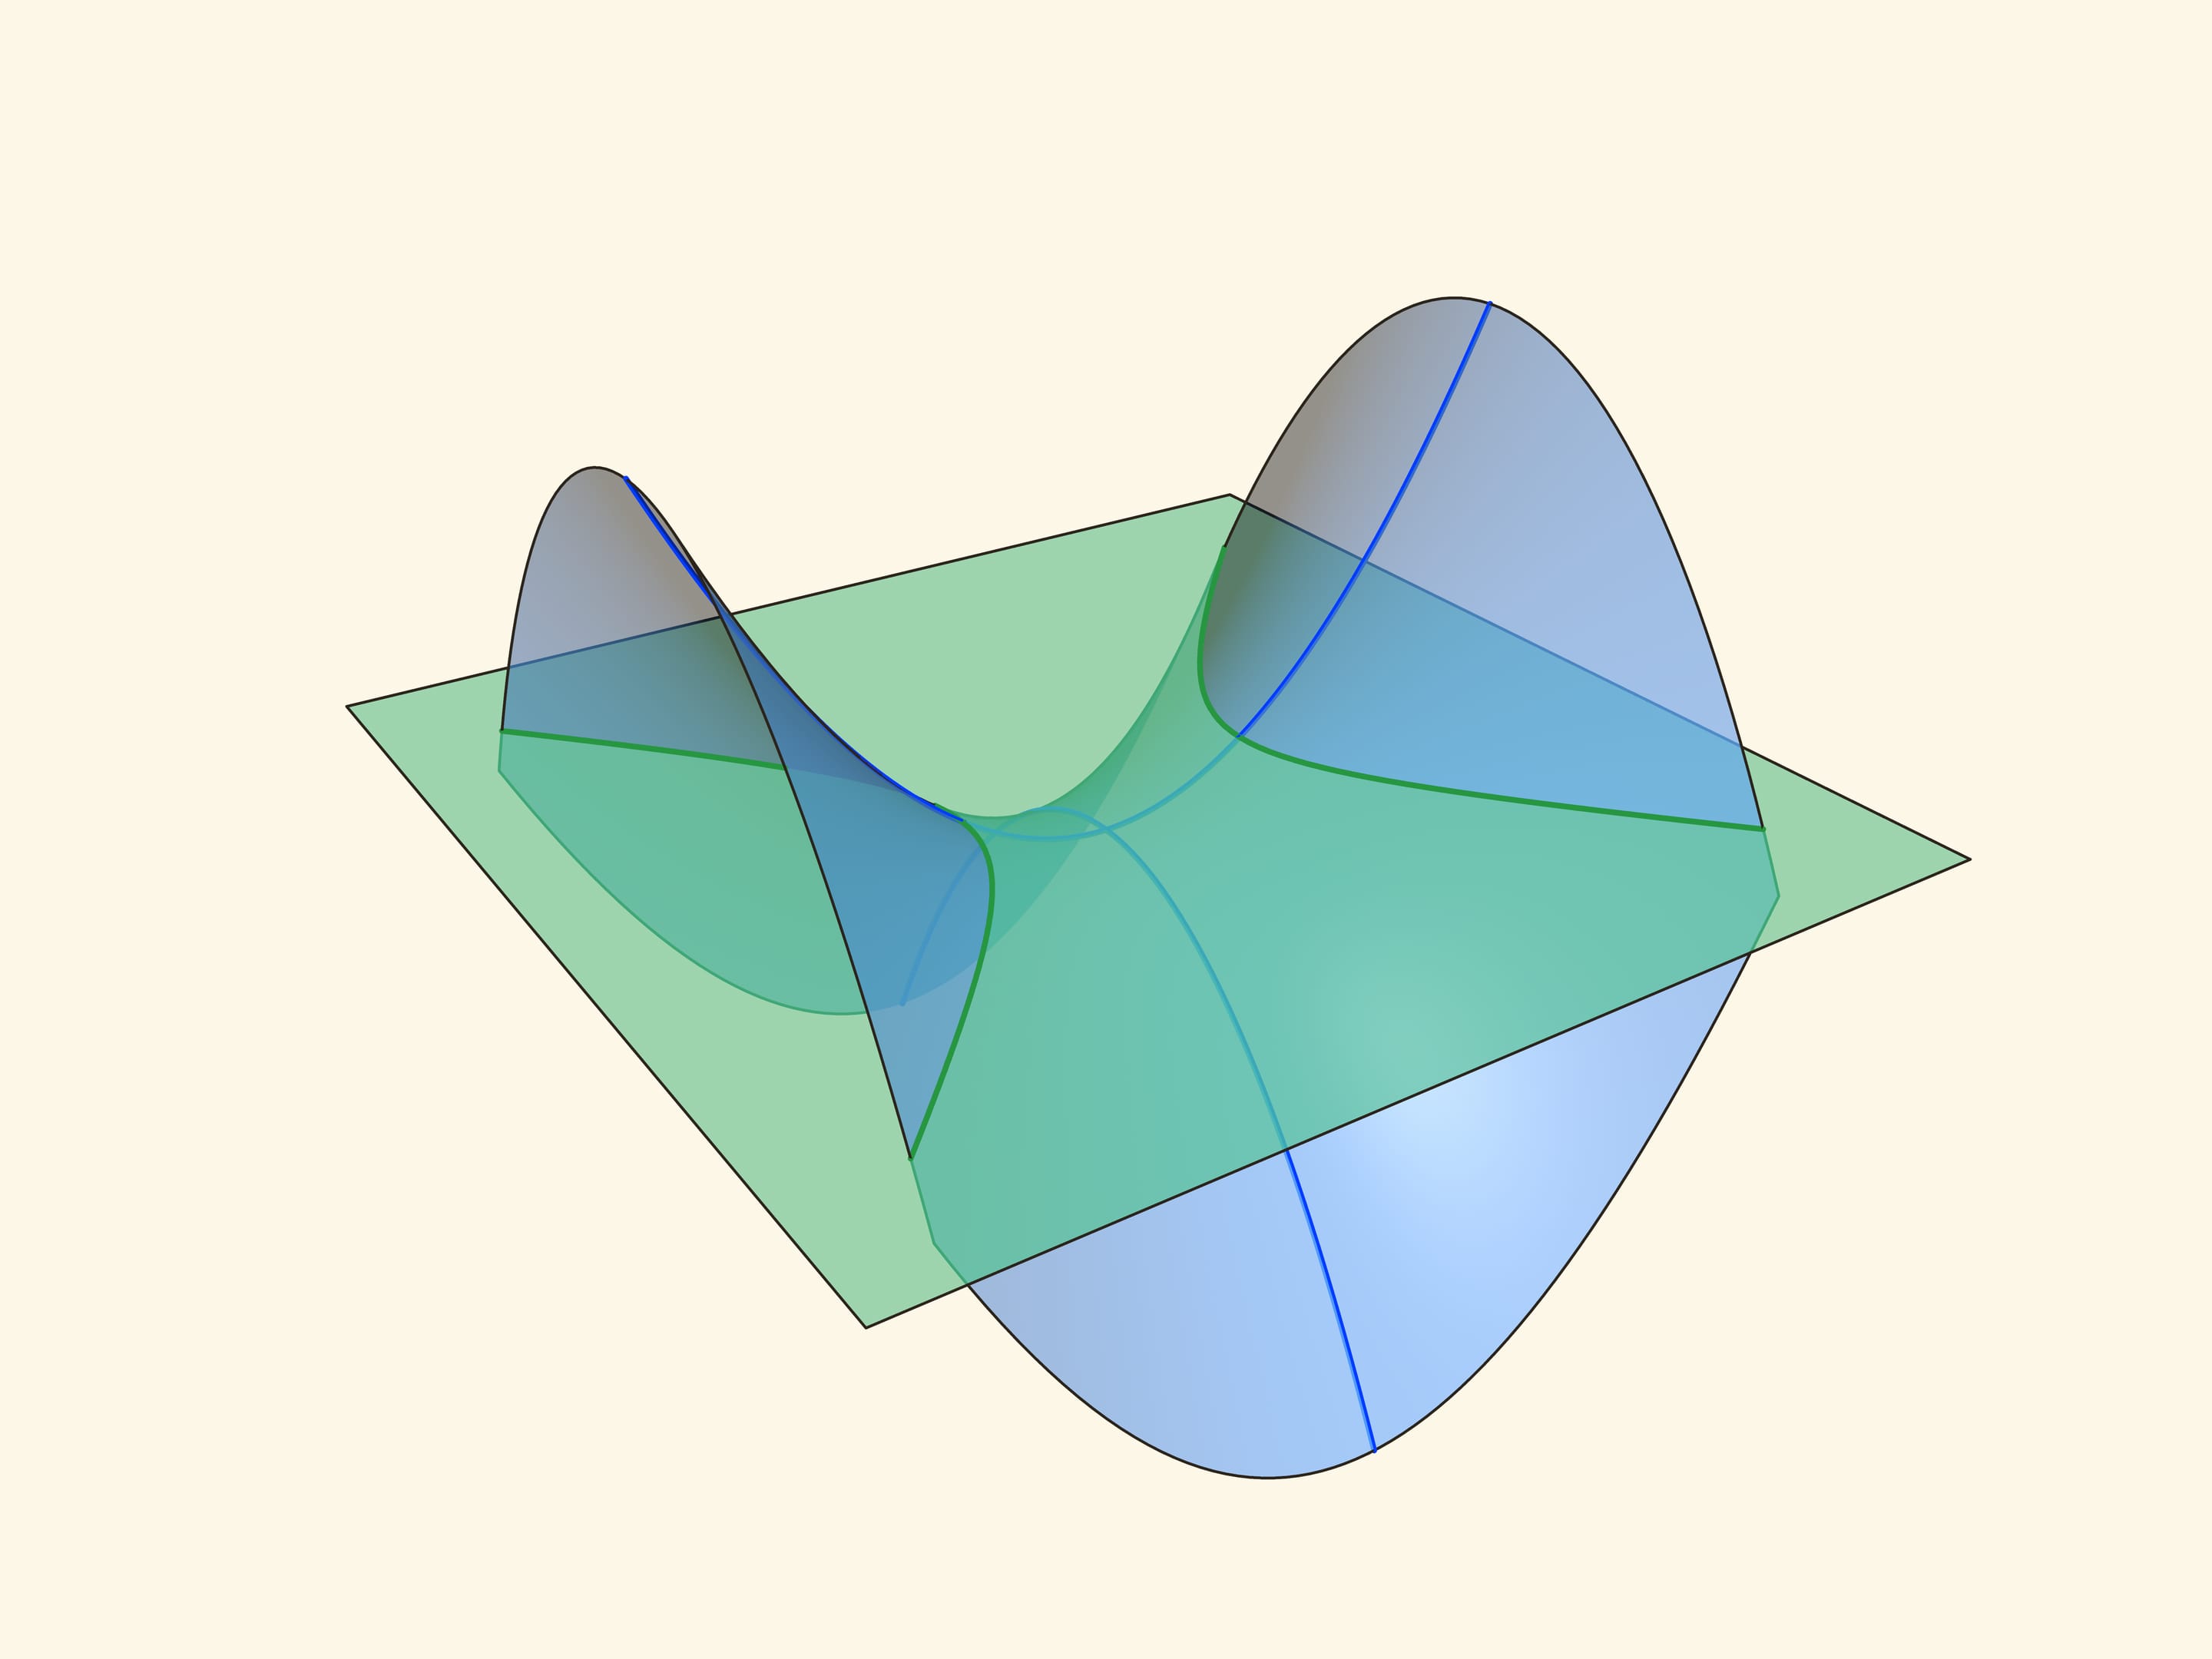 Saddle surface of a hyperbolic paraboloid / Models // Mathematical Etudes